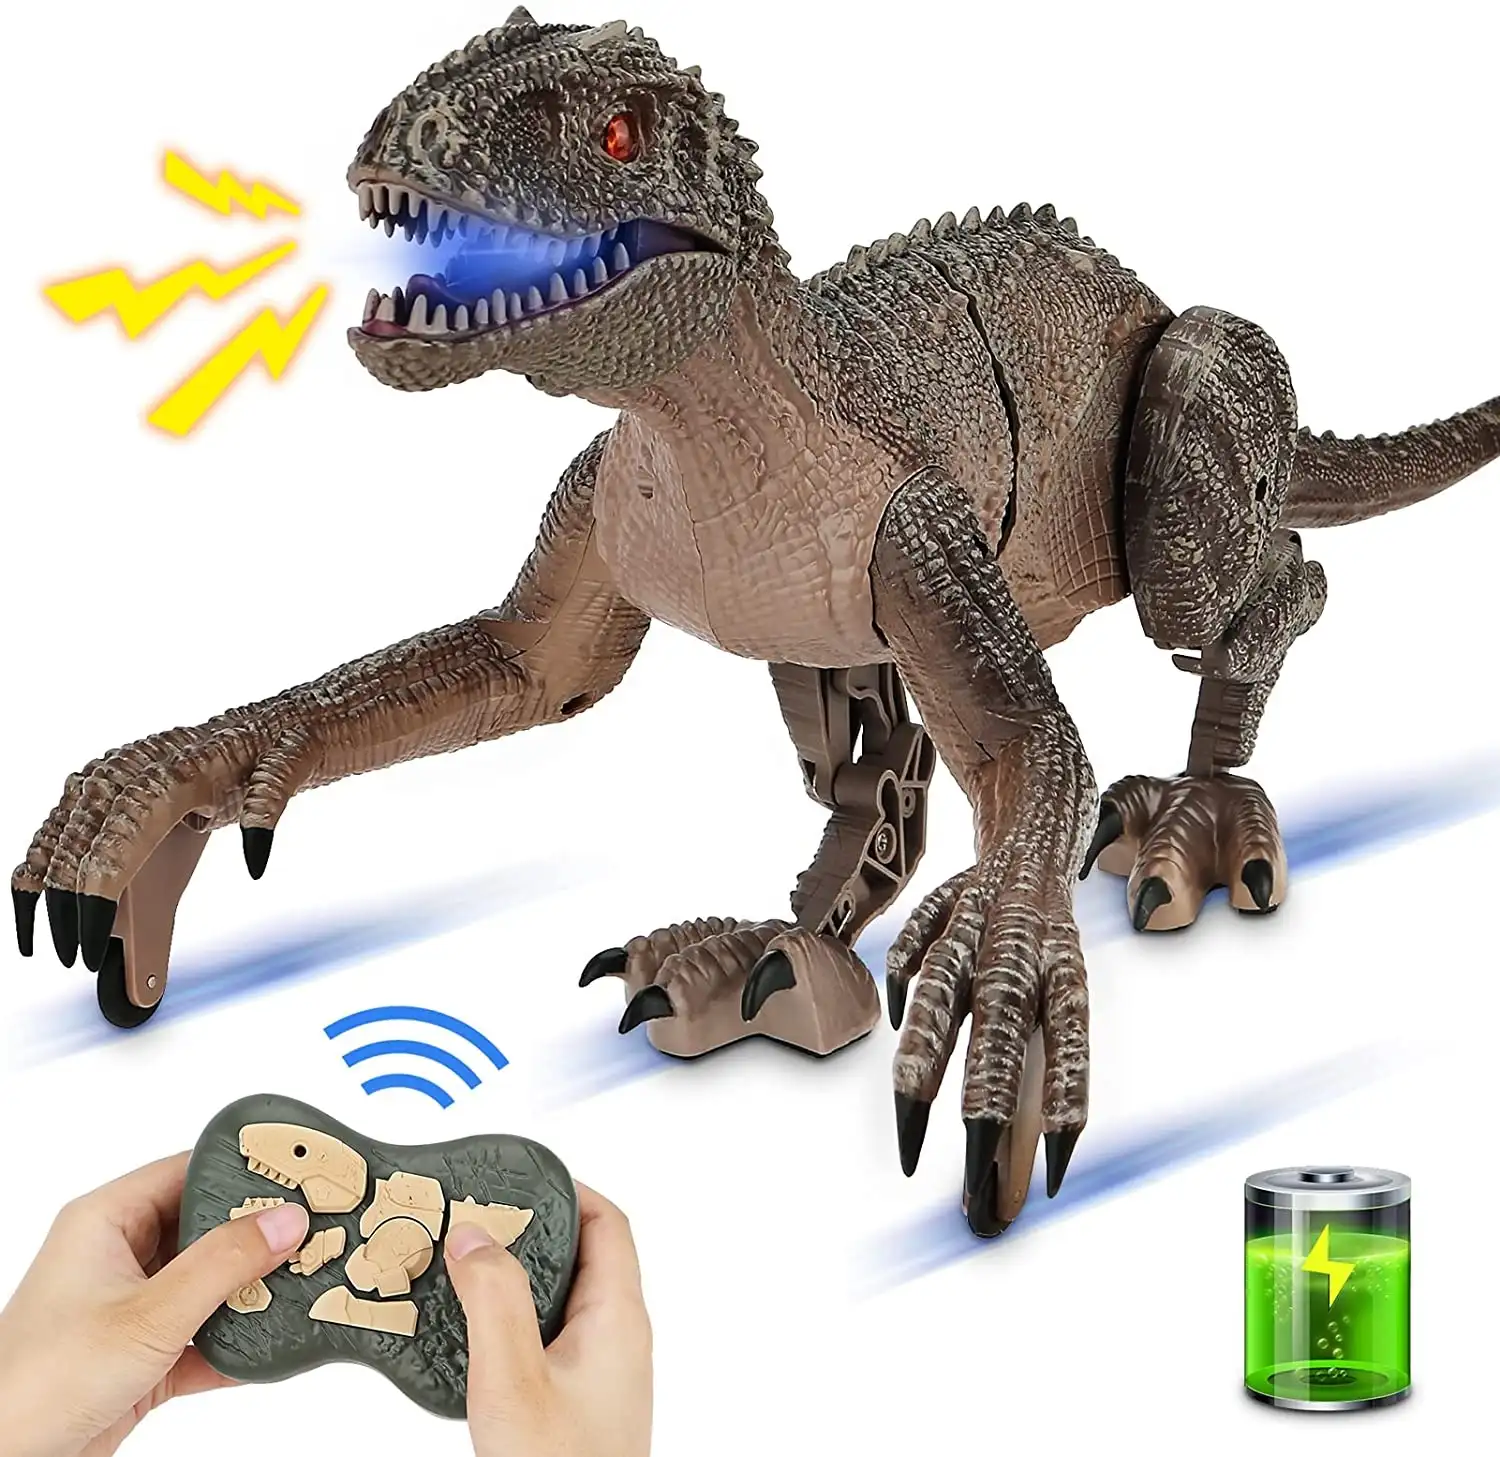 Amazon Горячая продажа динозавр RC игрушки имитация ходьба качели с дистанционным управлением Динозавр для детей